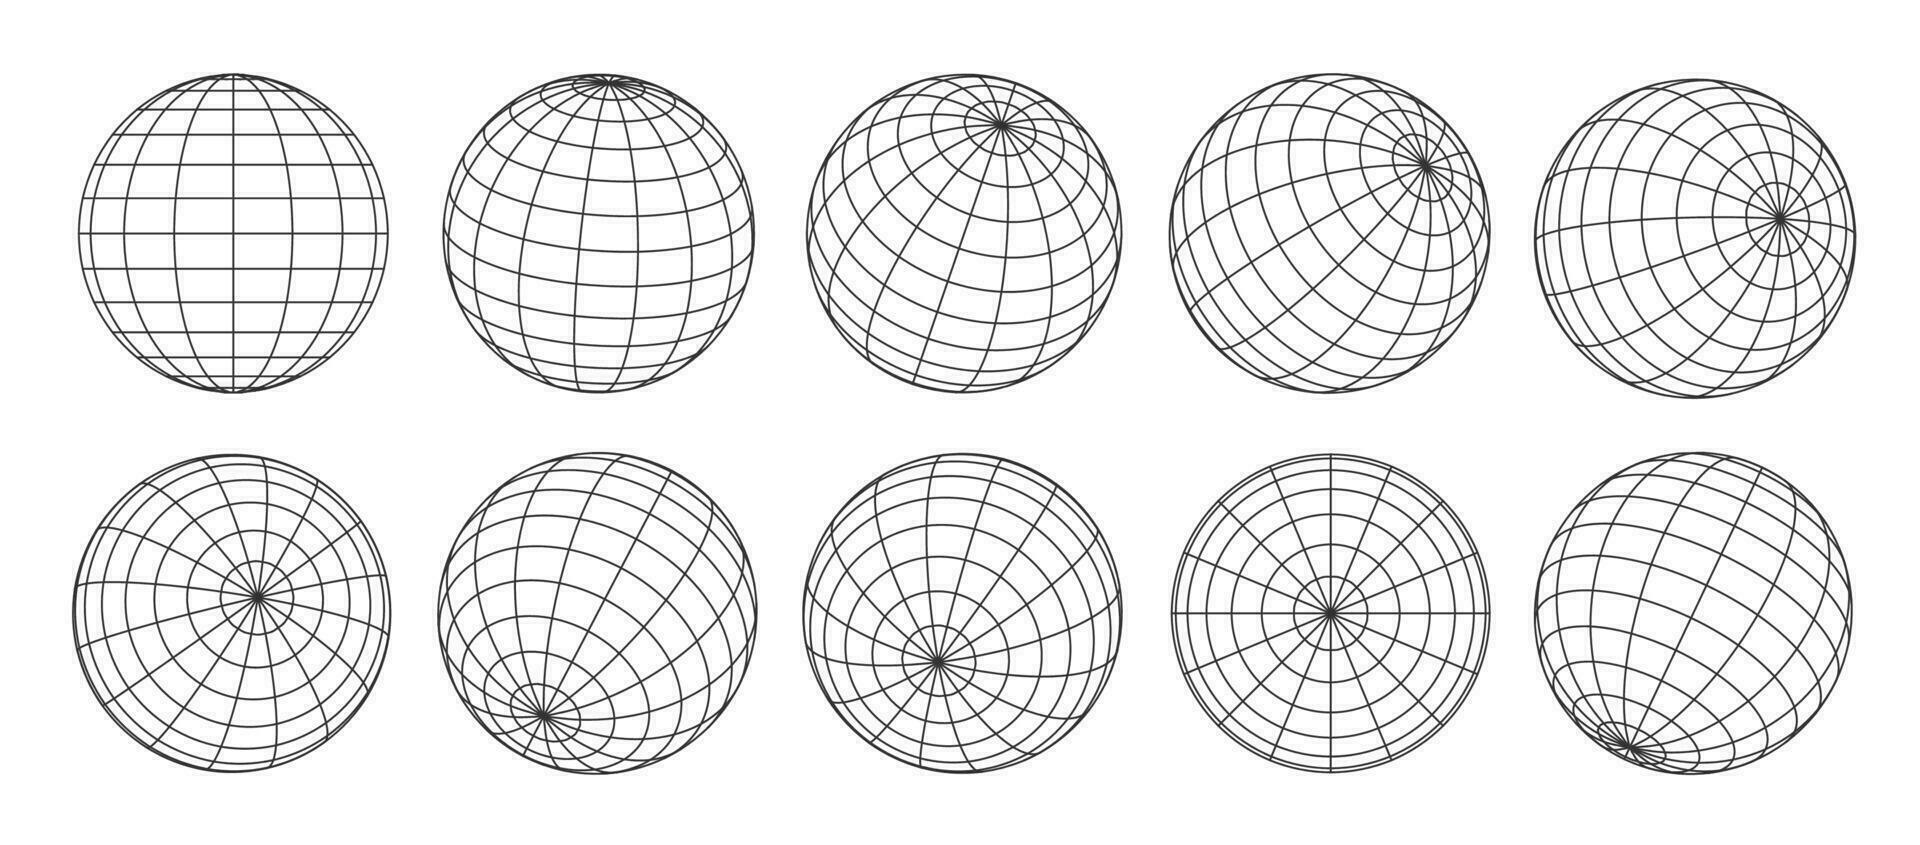 3d globo red, planeta esfera y pelota estructura metálica vector